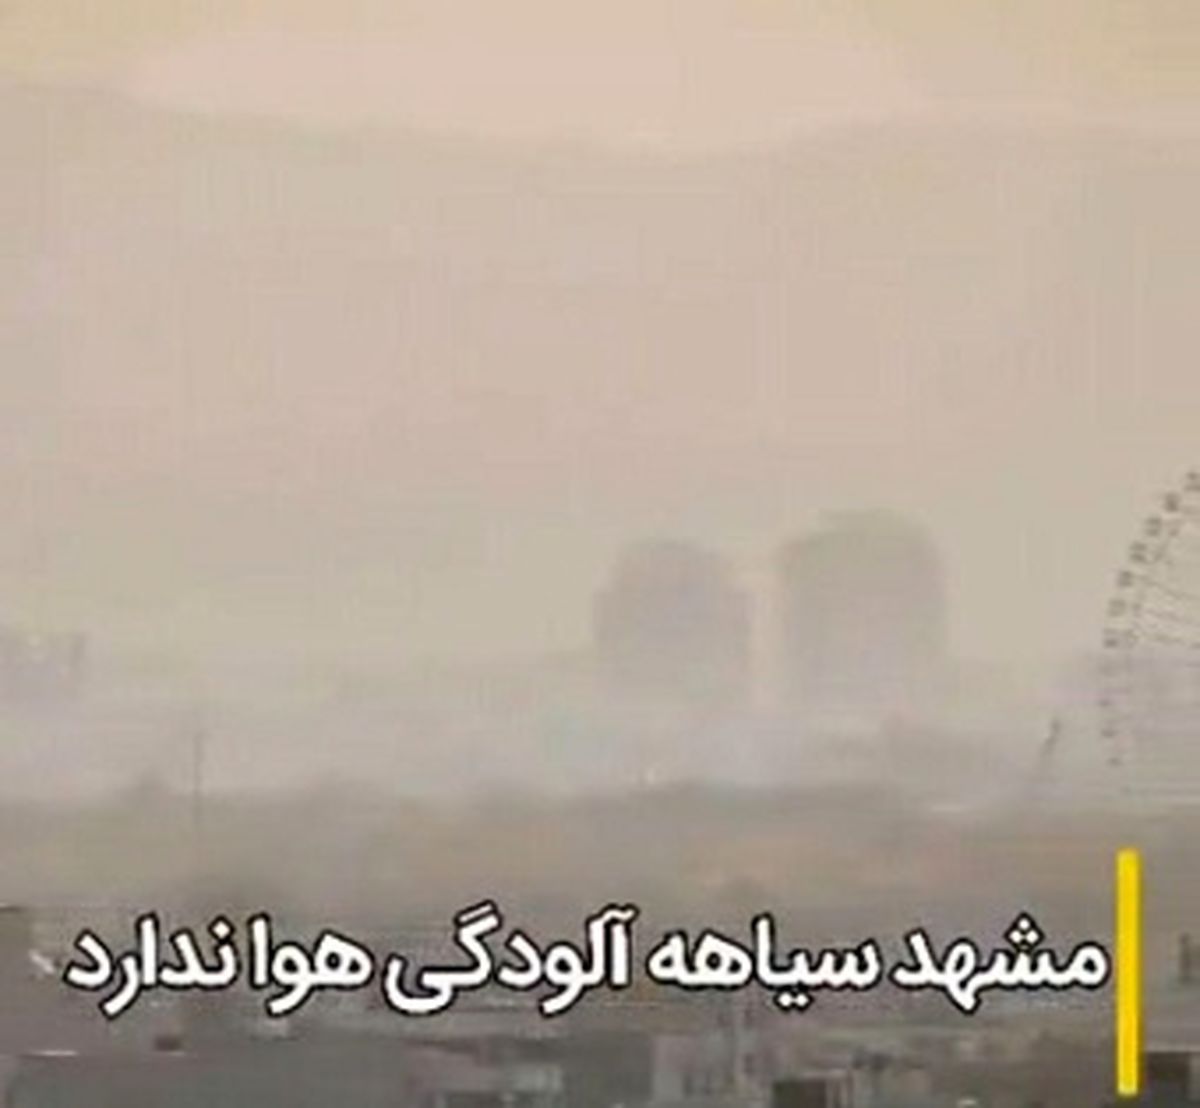 مشهد امروز اولین روز آلوده خود در سال ۹۸ را تجربه کرد